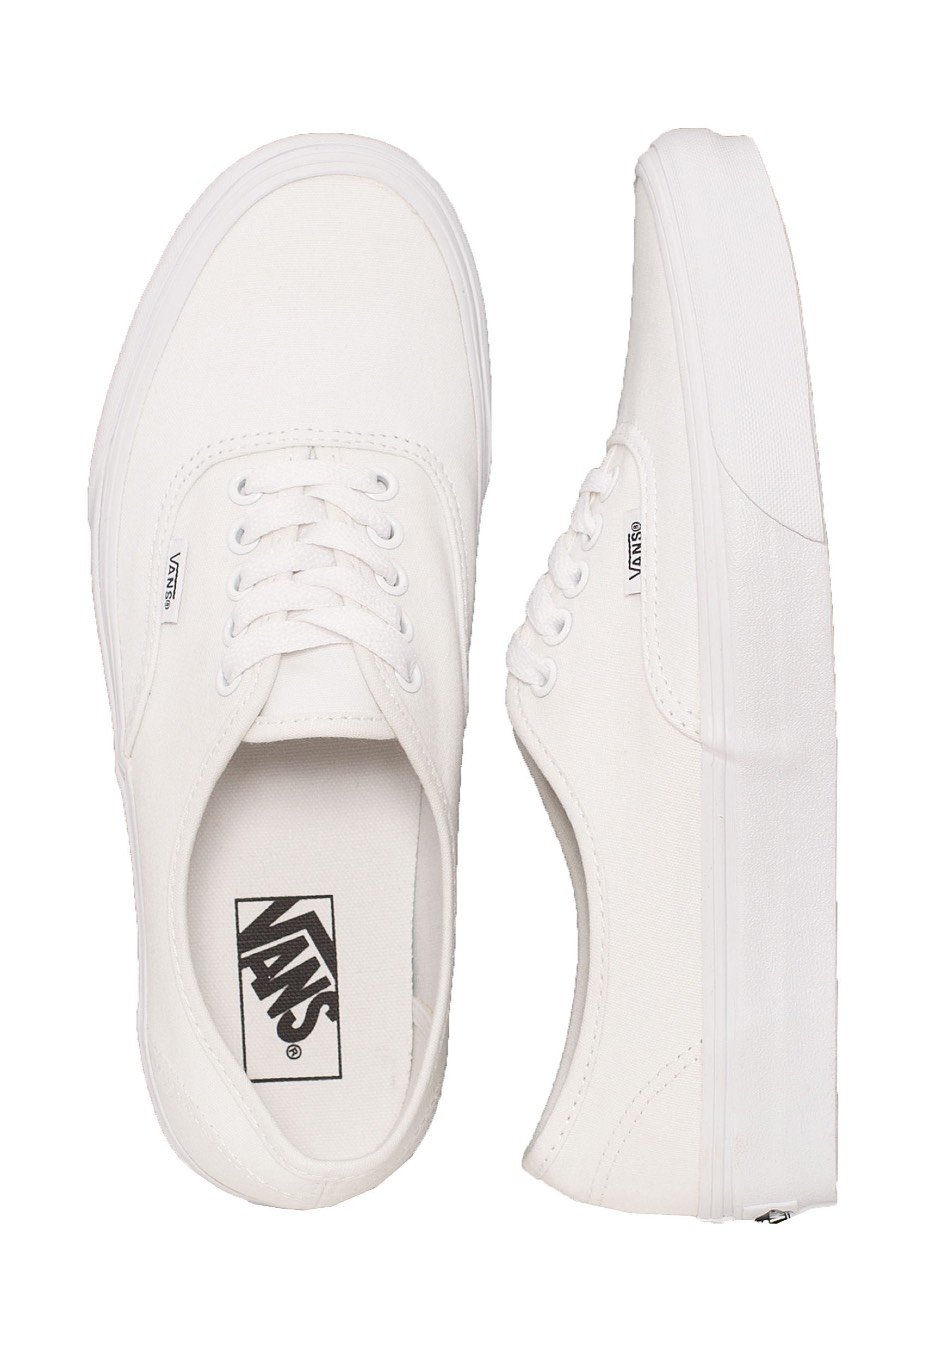 Vans - Authentic True White - Shoes 